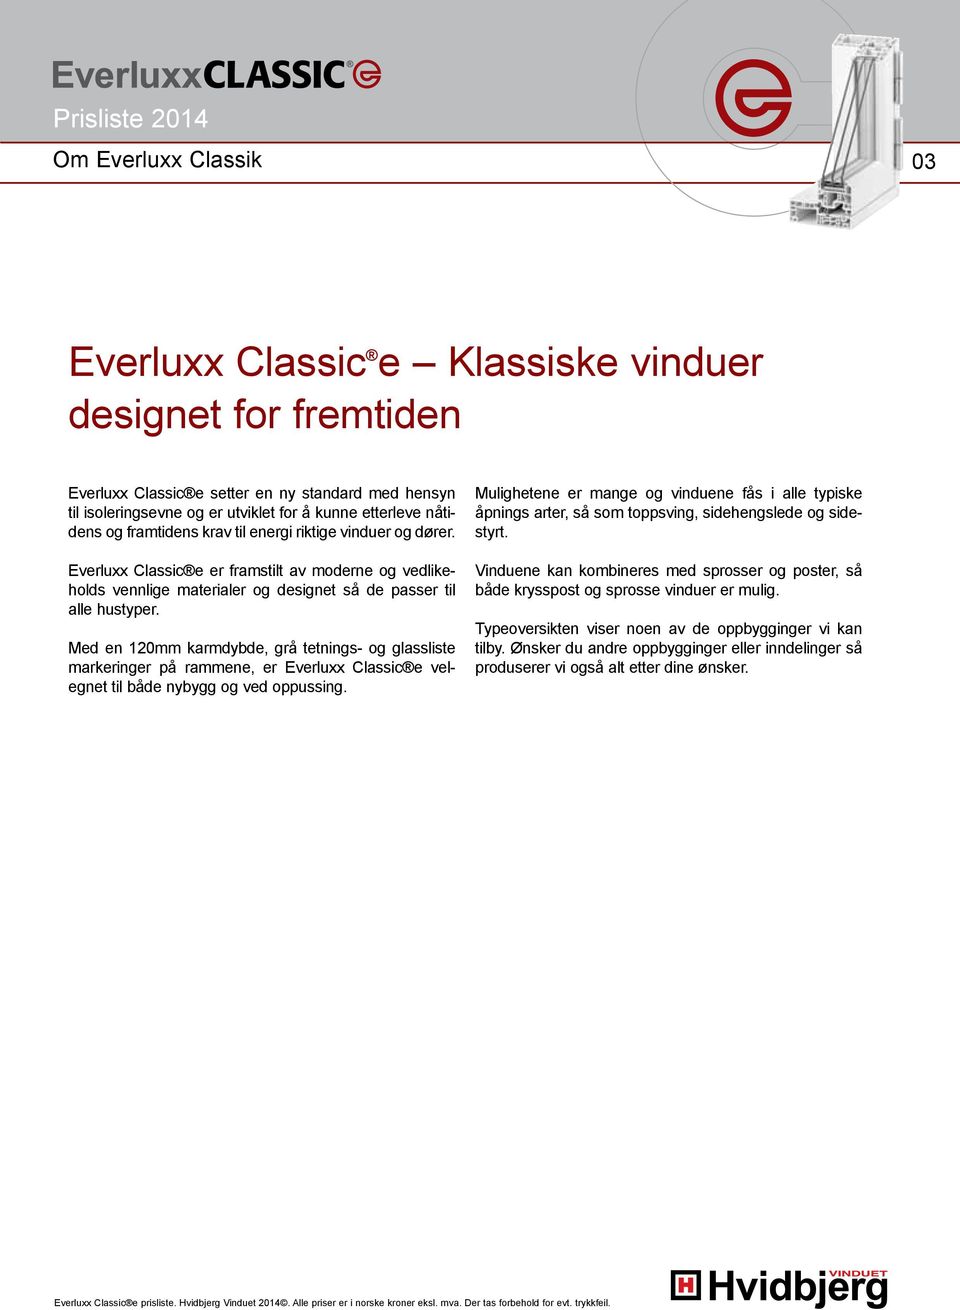 Med en 120mm karmdybde, grå tetnings- og glassliste markeringer på rammene, er Everluxx Classic e velegnet til både nybygg og ved oppussing.